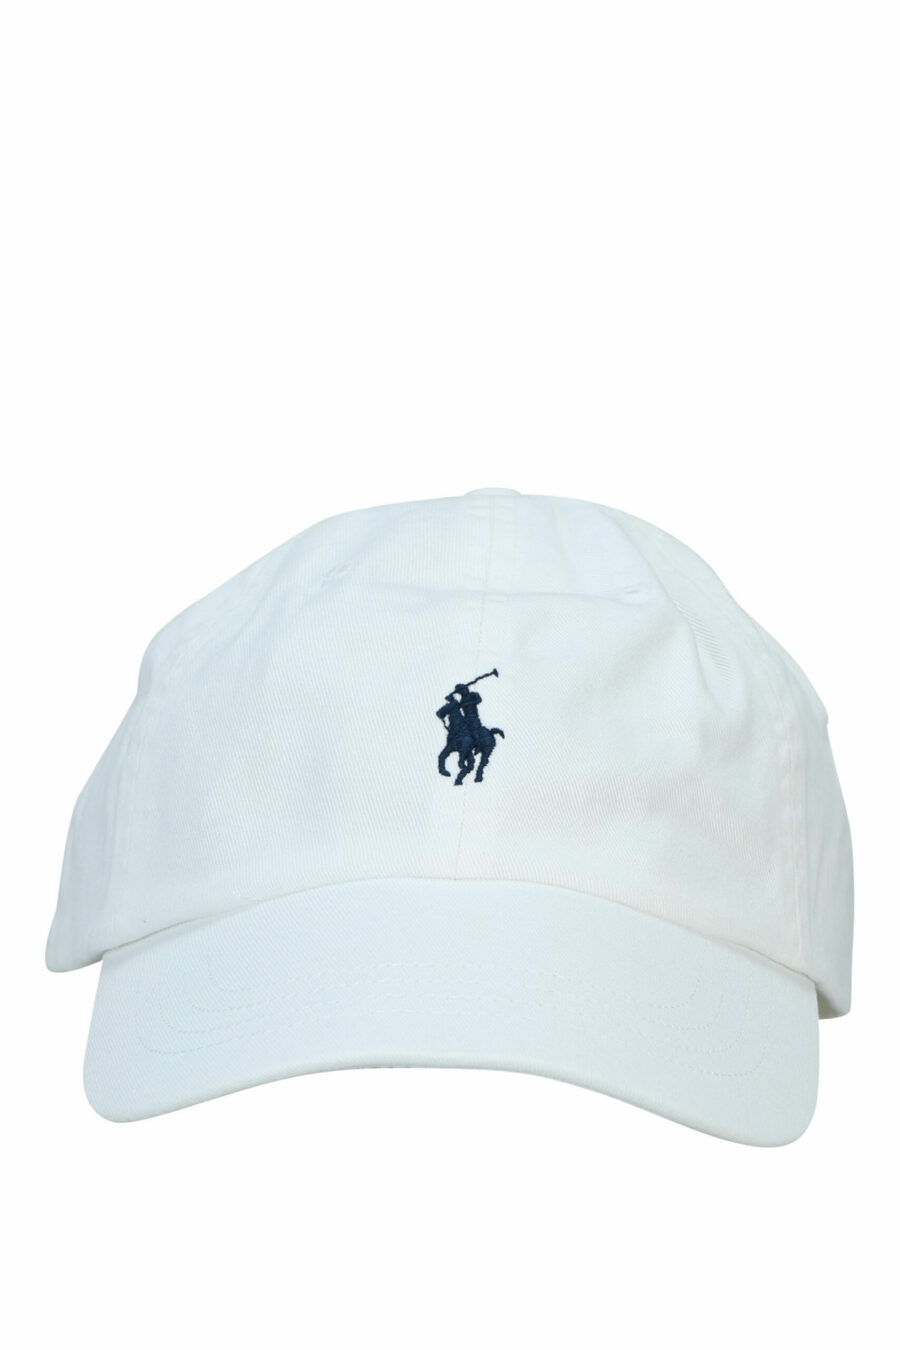 White cap with mini-logo "polo" - 3616531139408 scaled